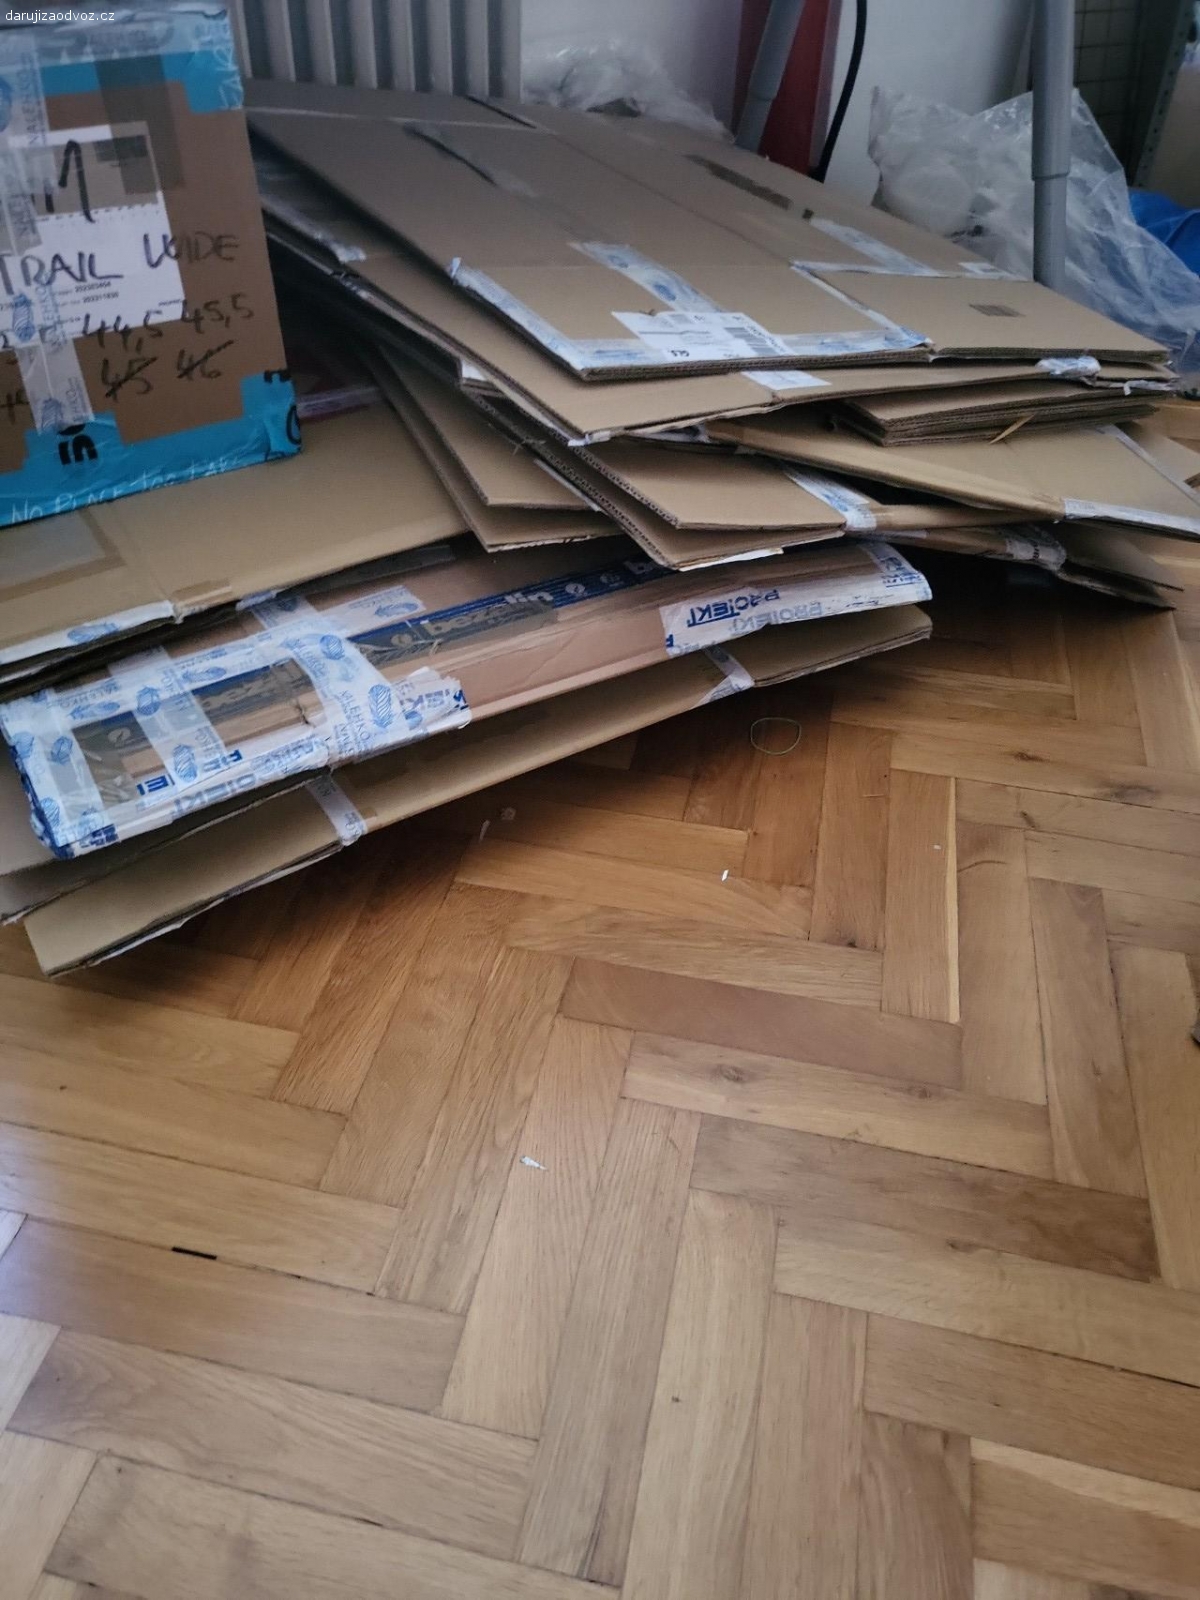 Daruji kartonové krabice. Daruji papírové krabice, vhodné ke stěhování či uskladnění věcí, rozměry cca 90×60×40 cm. K vyzvednutí na Praze 1.